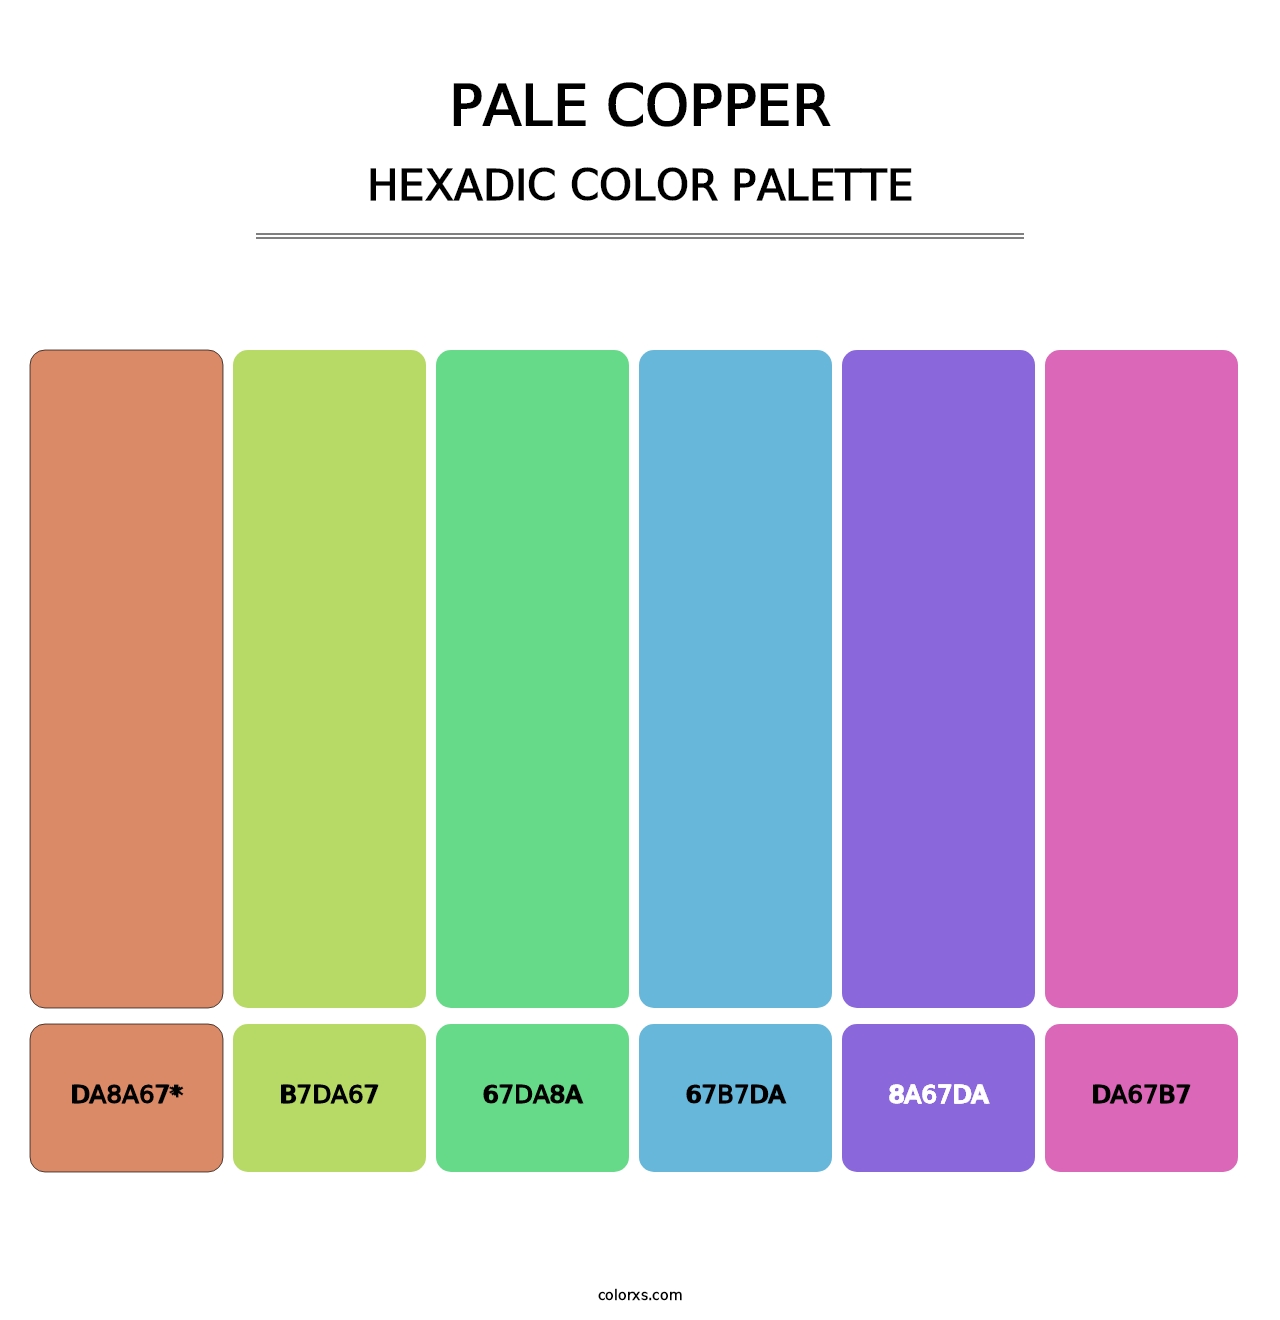 Pale Copper - Hexadic Color Palette